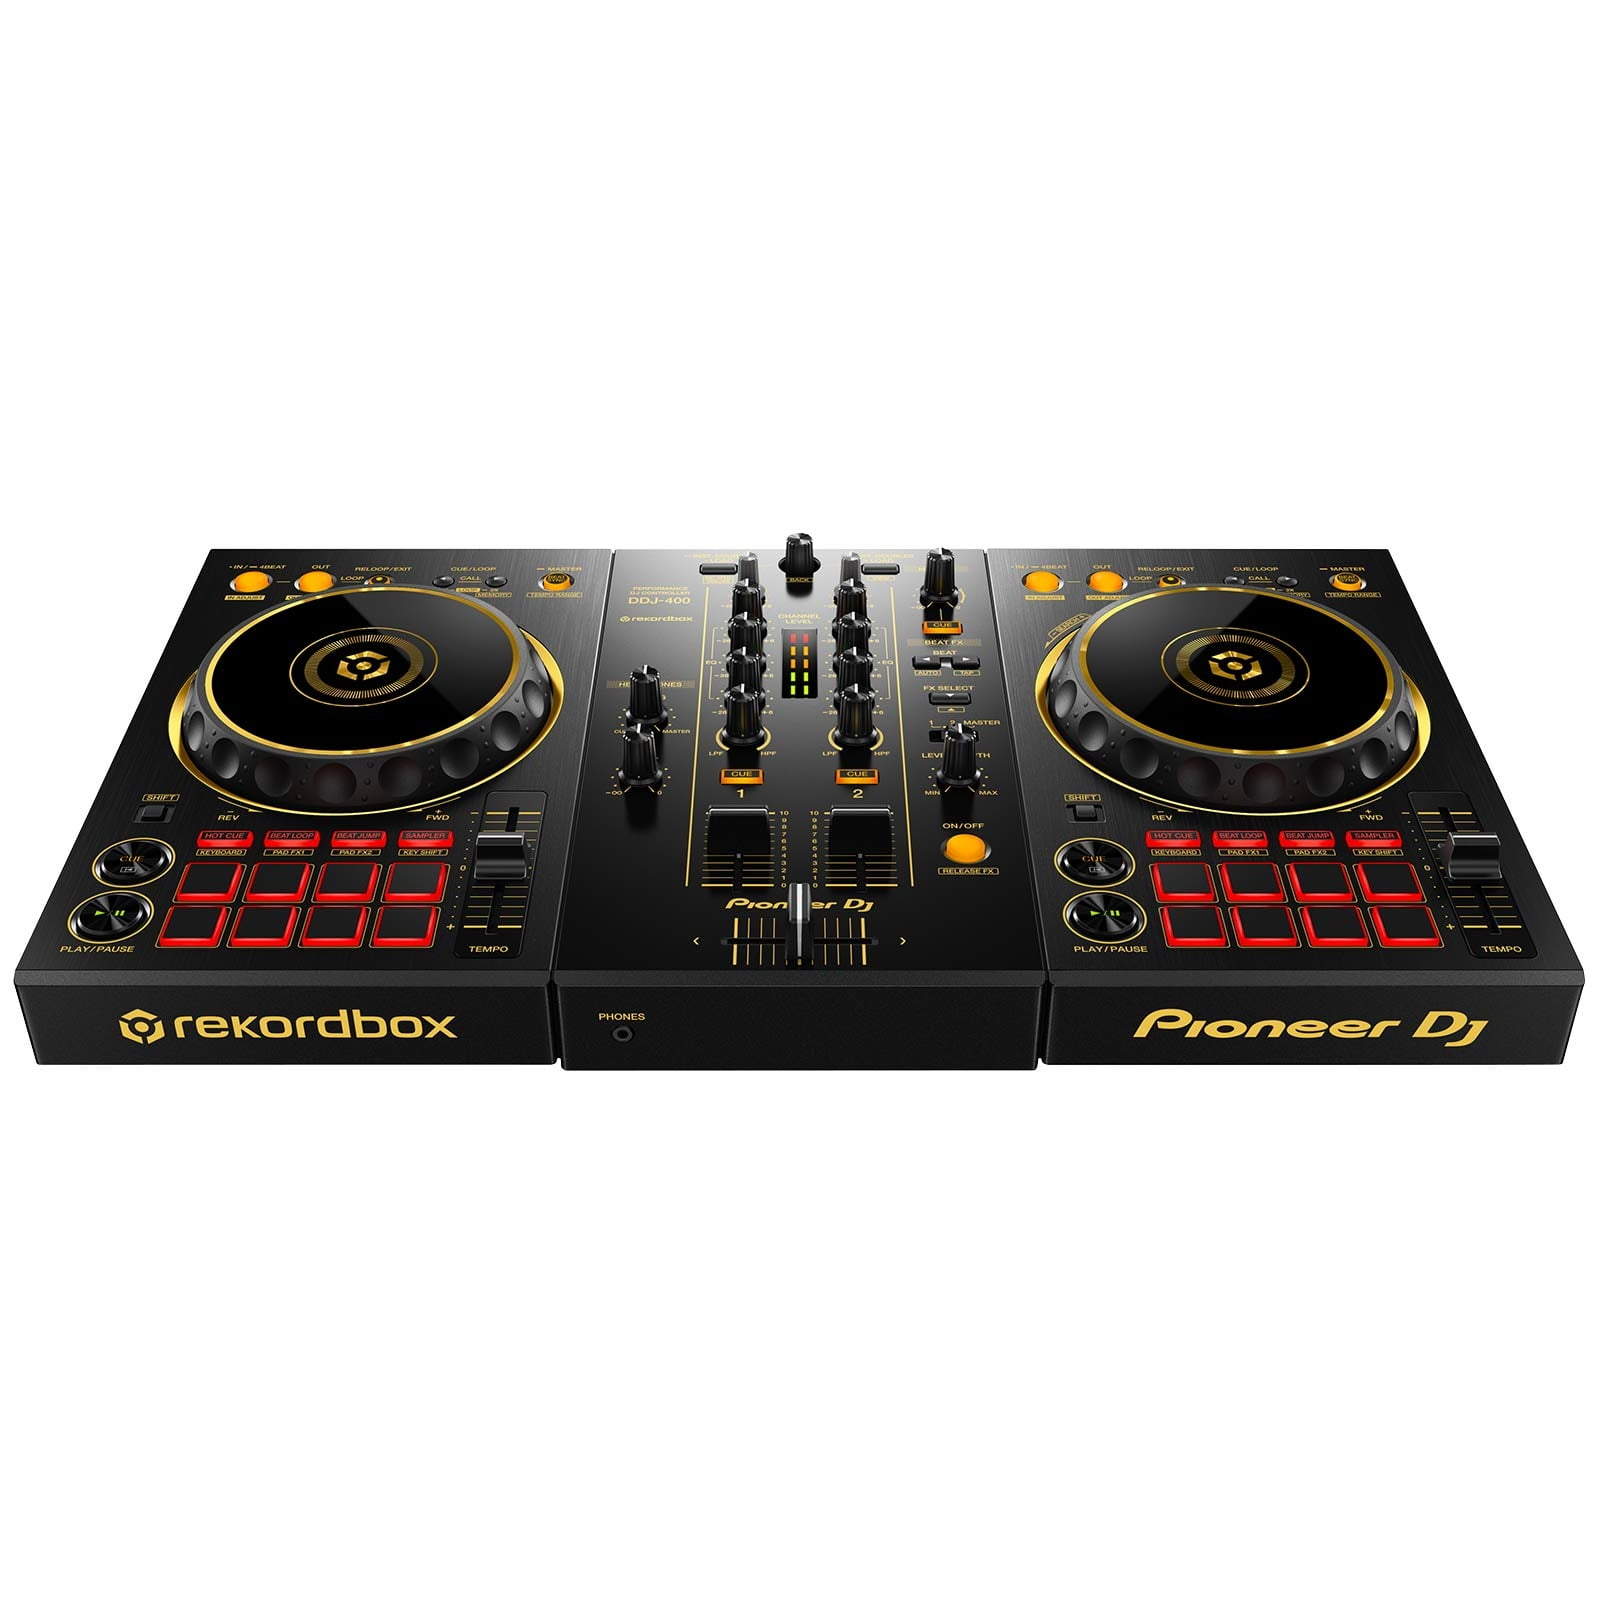 Pioneer DJ Limited Edition Gold DDJ-400 2-channel rekordbox DJ